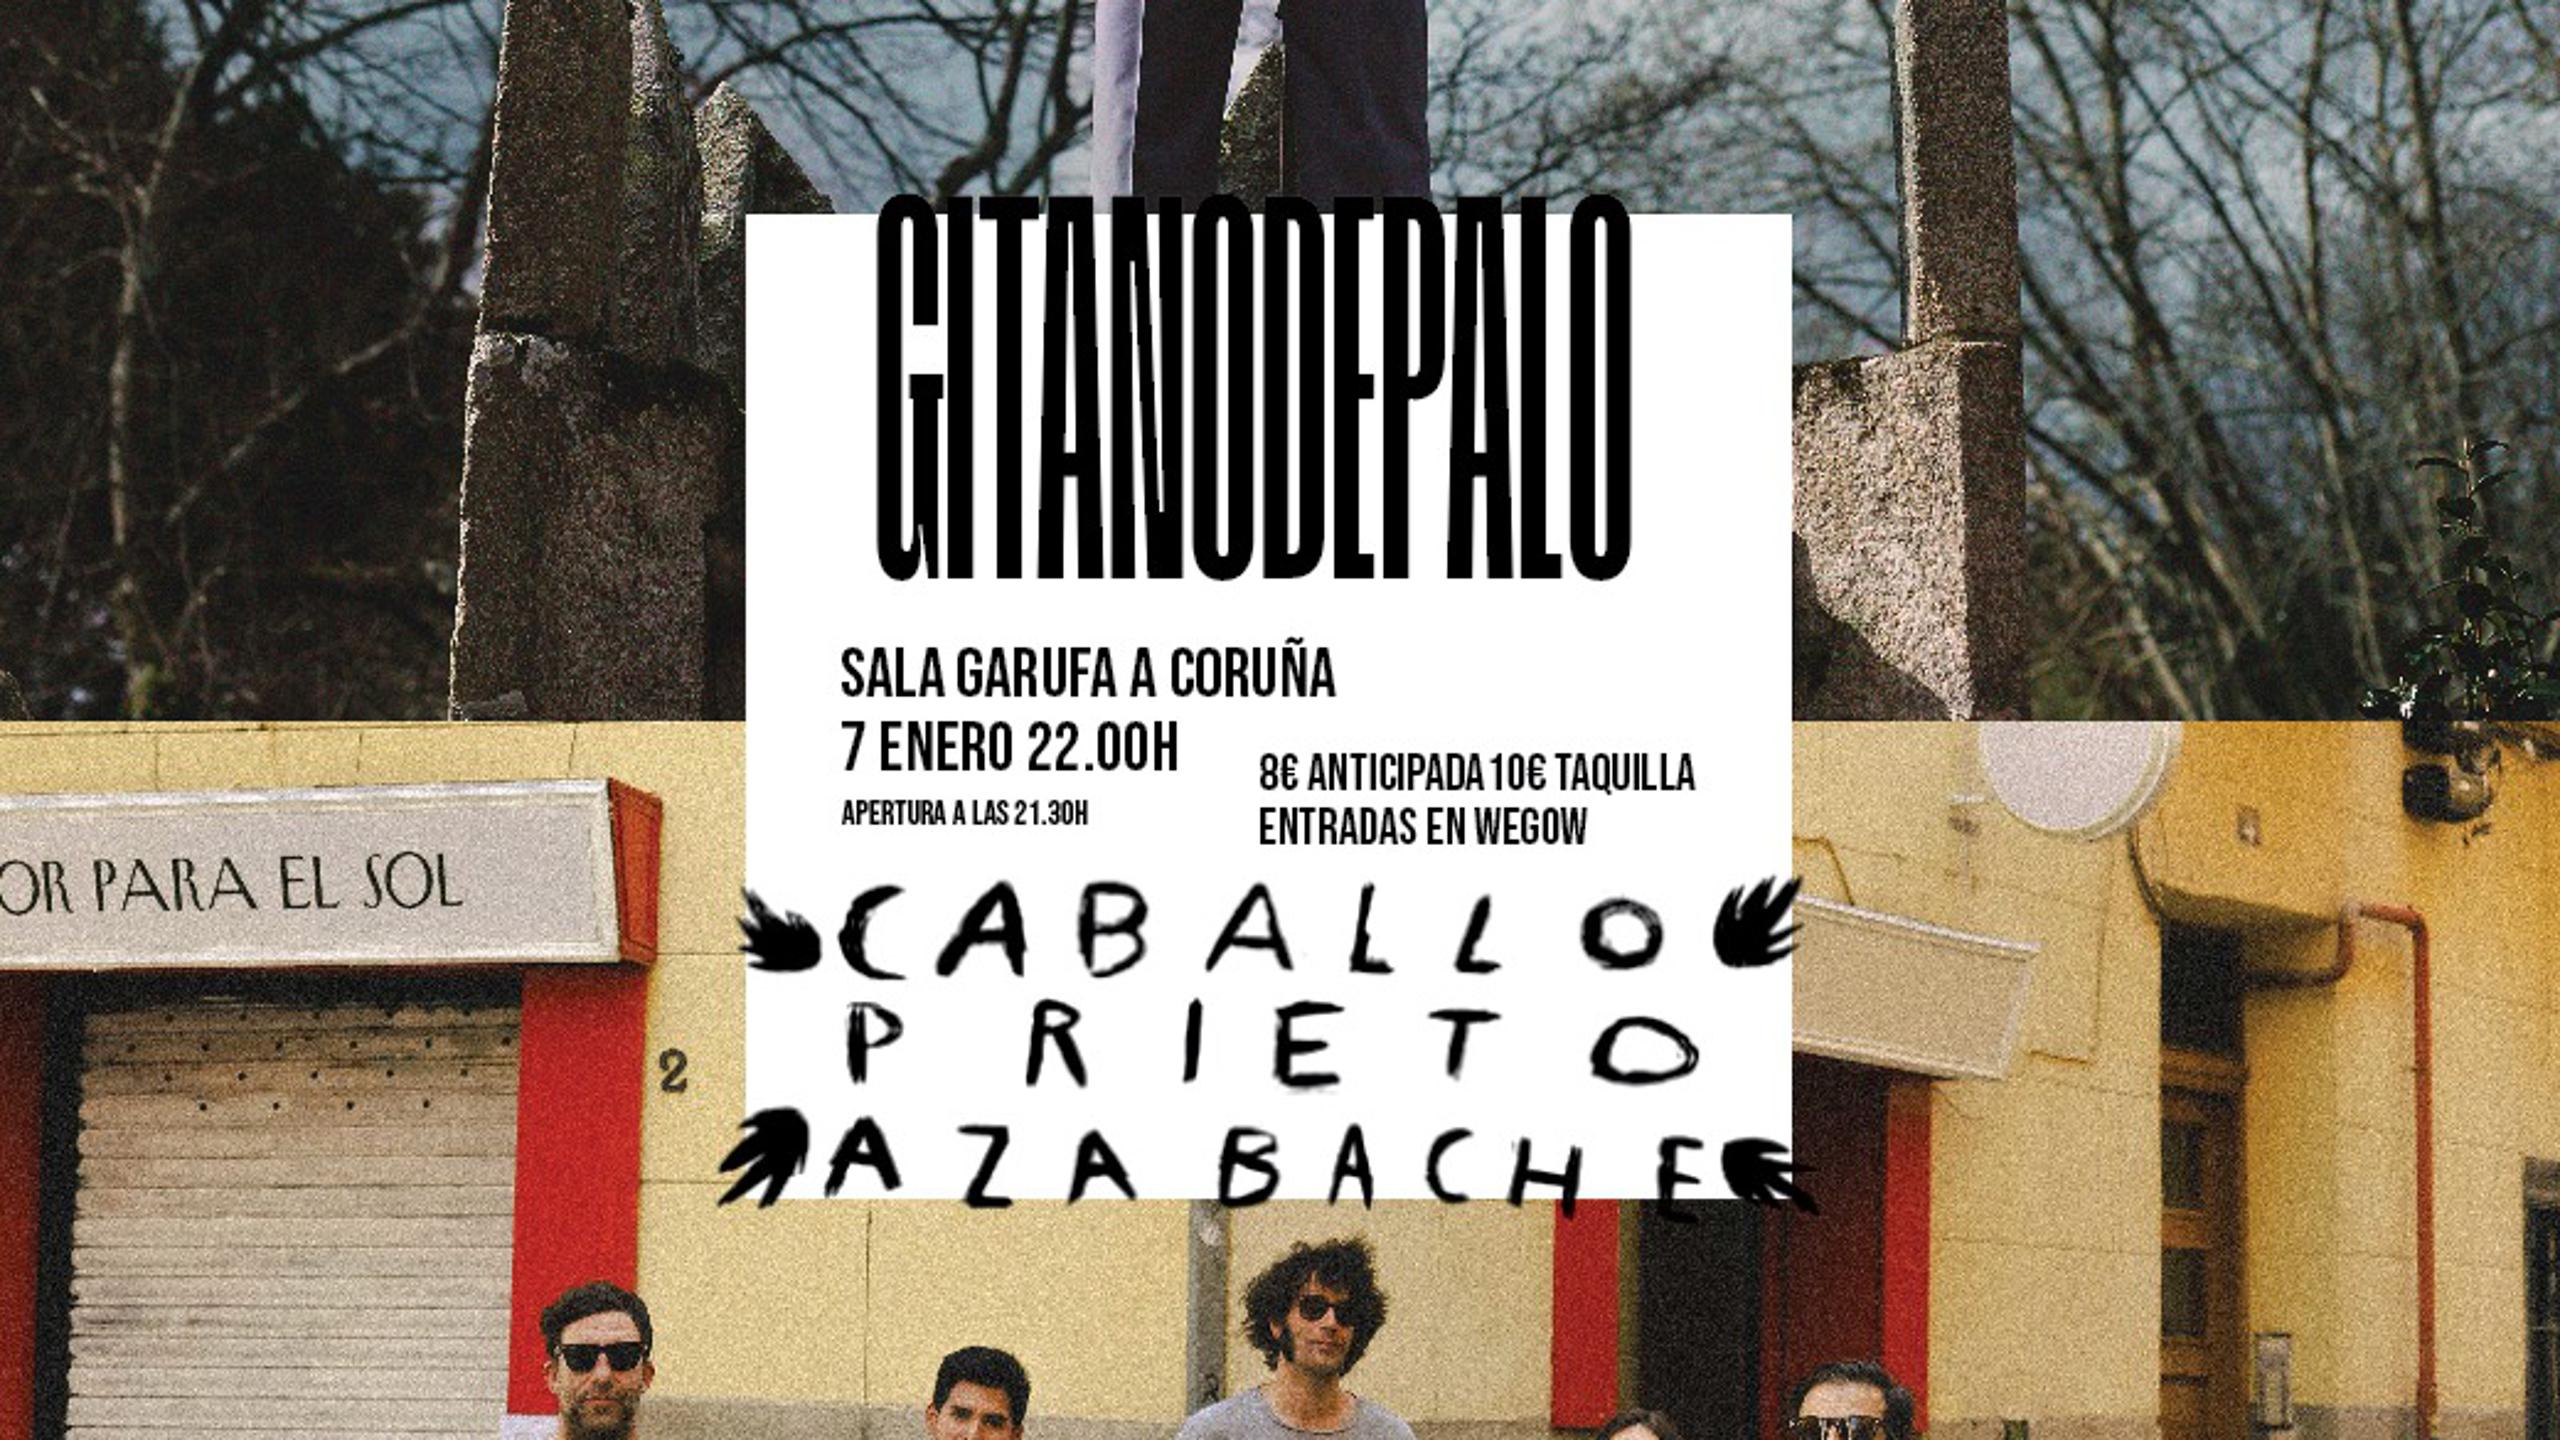 Caballo Prieto Azabache Gitano De Palo Concert Tickets For Garufa A Coruña Friday 7 January 